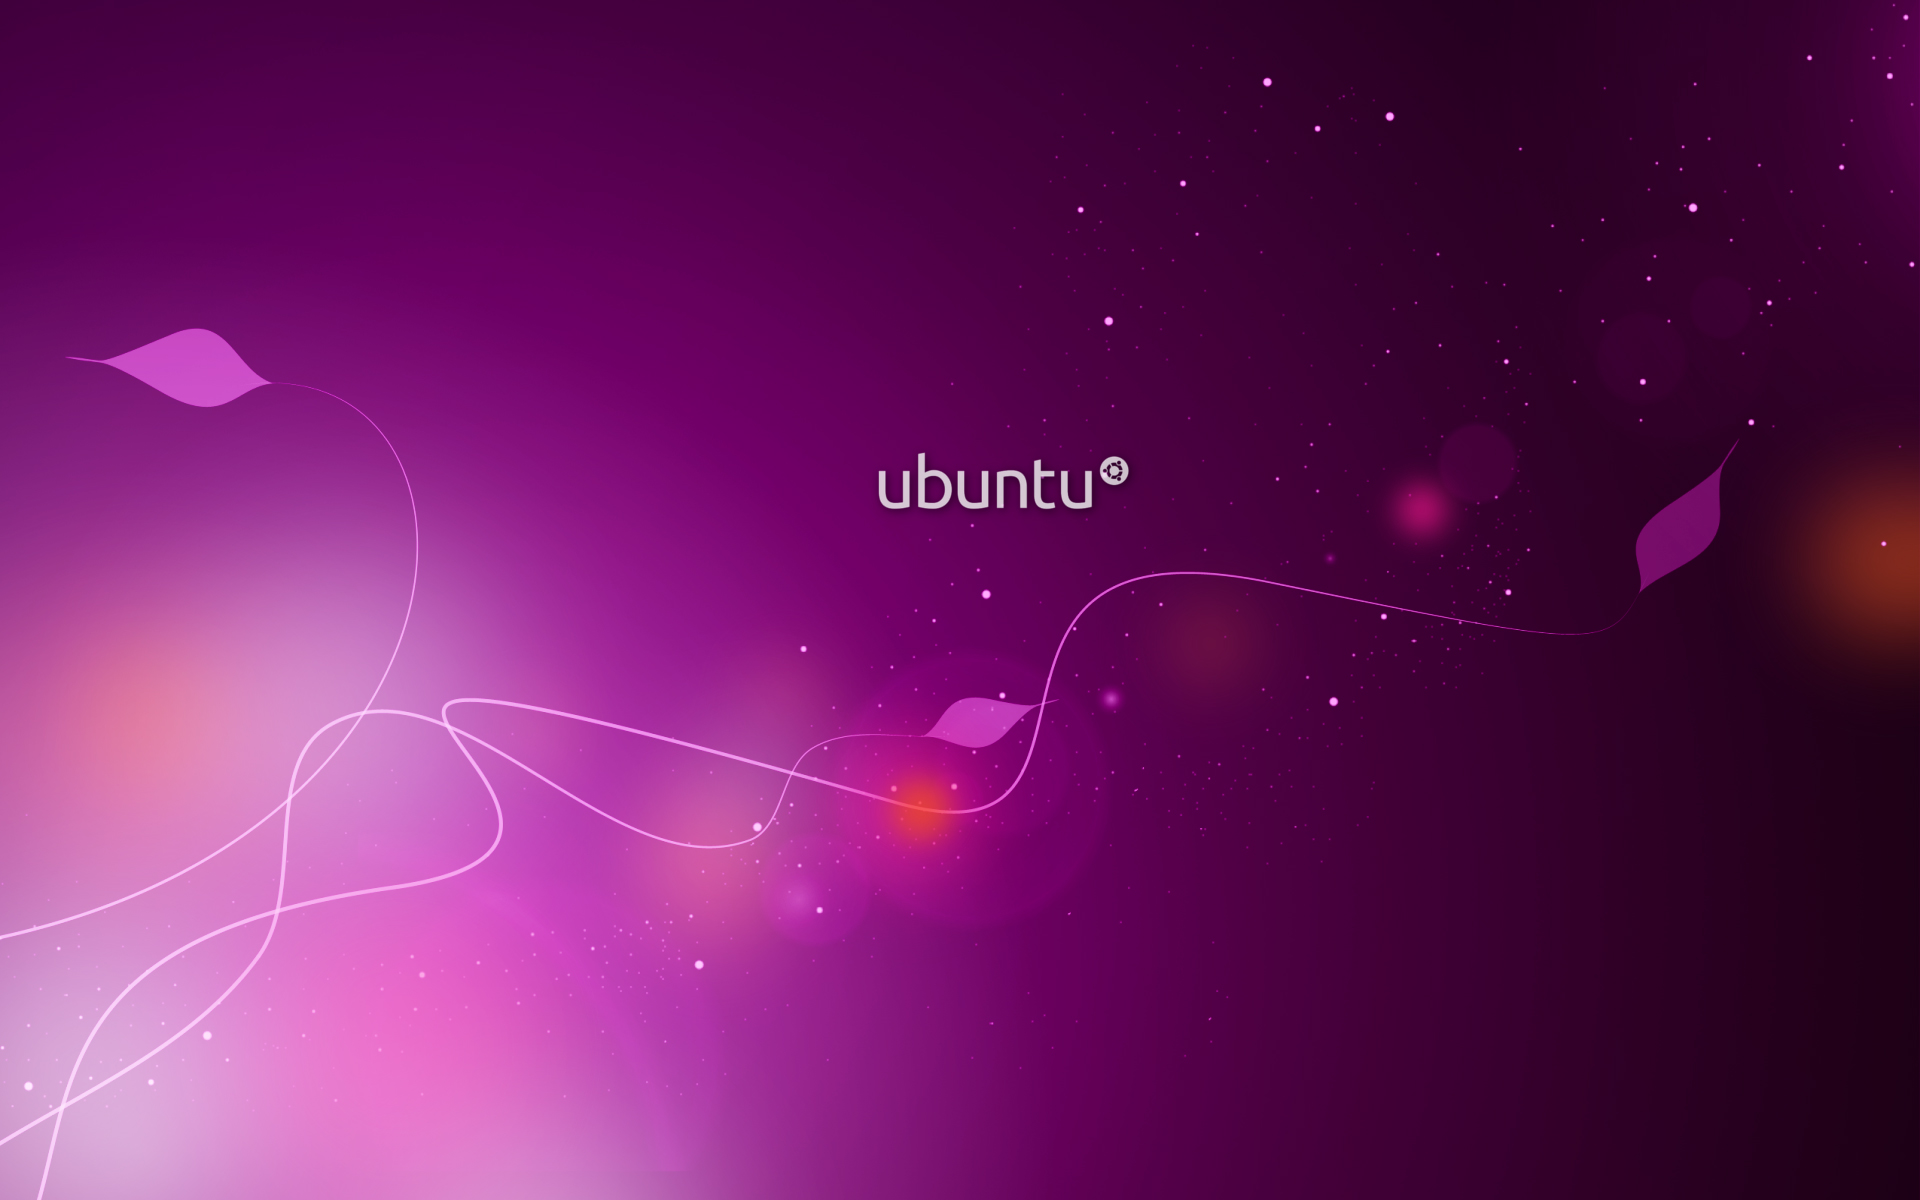 ubuntu_purple-wide.jpg